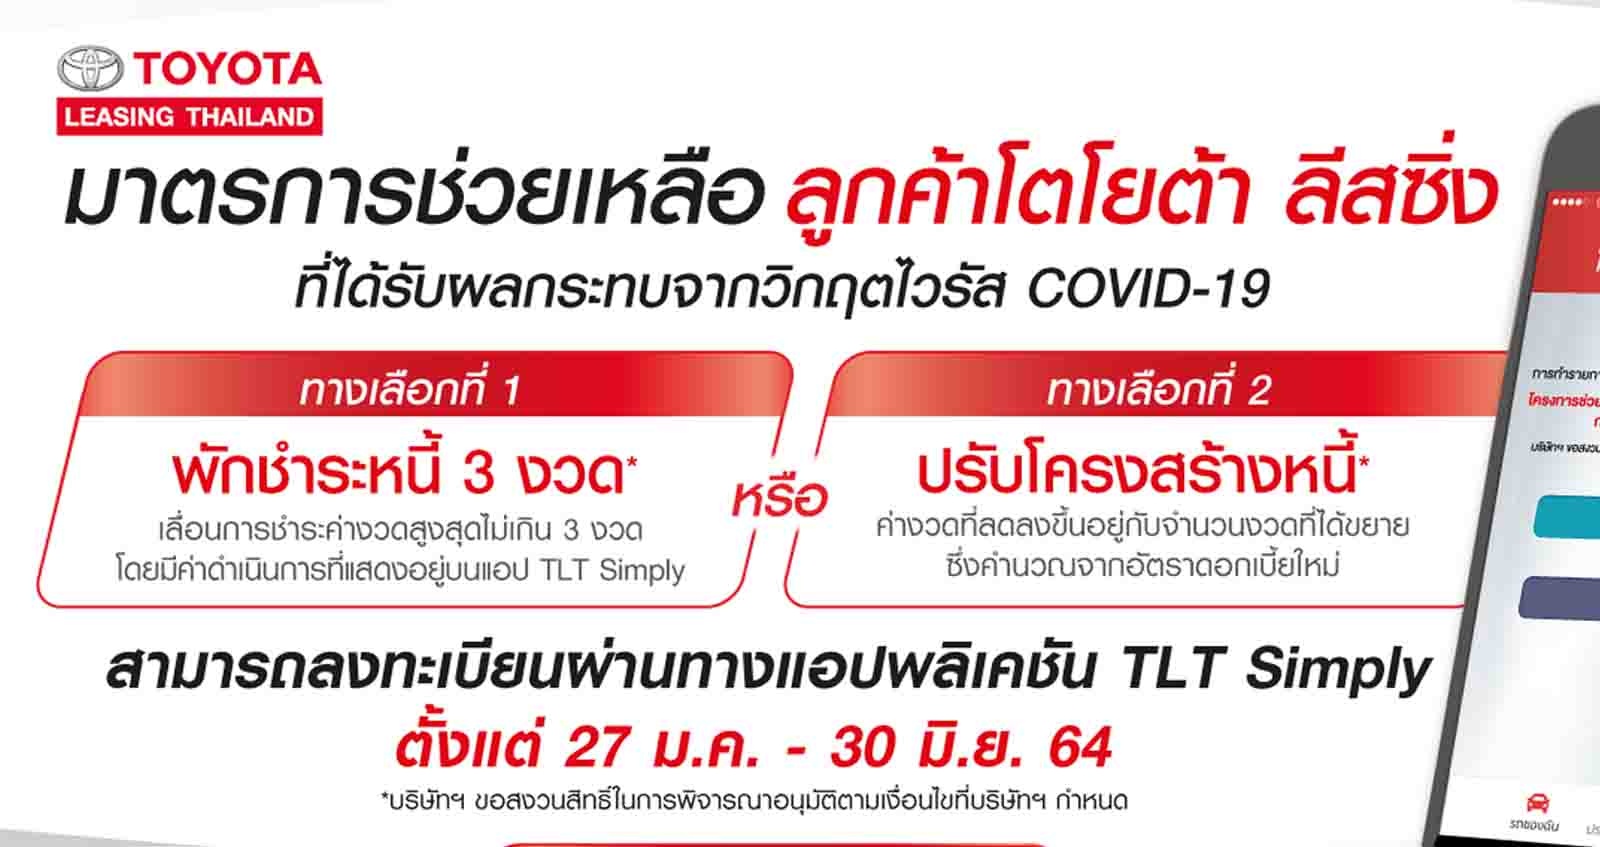 TOYOTA Leasing ประเทศไทย มาตรการพักหนี้ 3 งวด หรือ ปรับโครงสร้างหนี้ 27 มกราคม 2564 ถึง 30 มิถุนายน 2564​